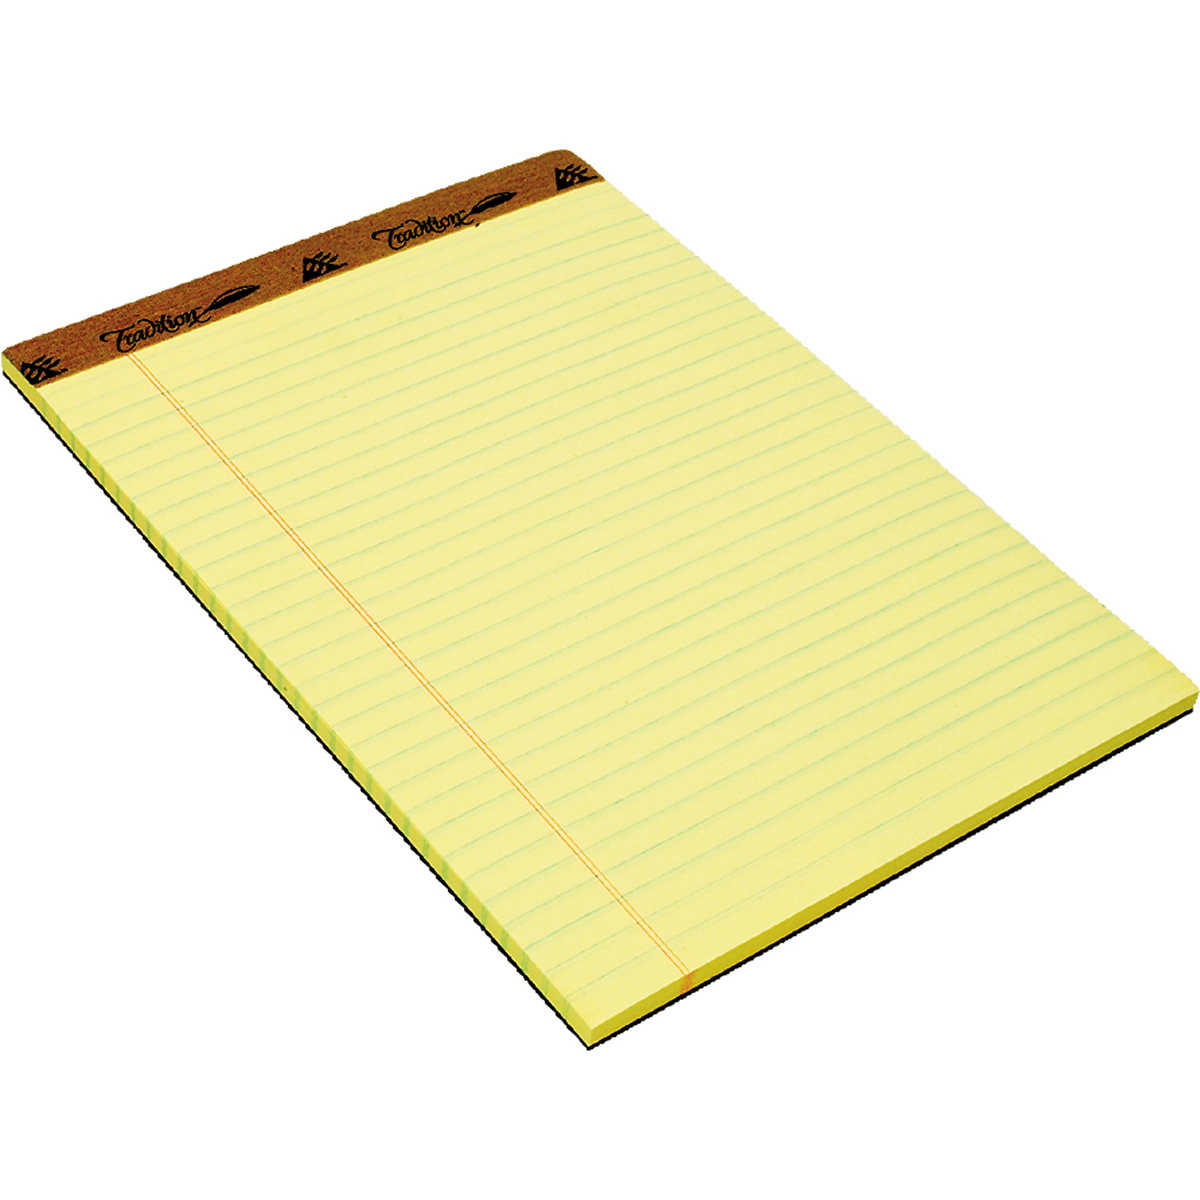 Universal Self-Stick Note Pads, 3 x 3, Yellow, 100-Sheet, 12-Pack